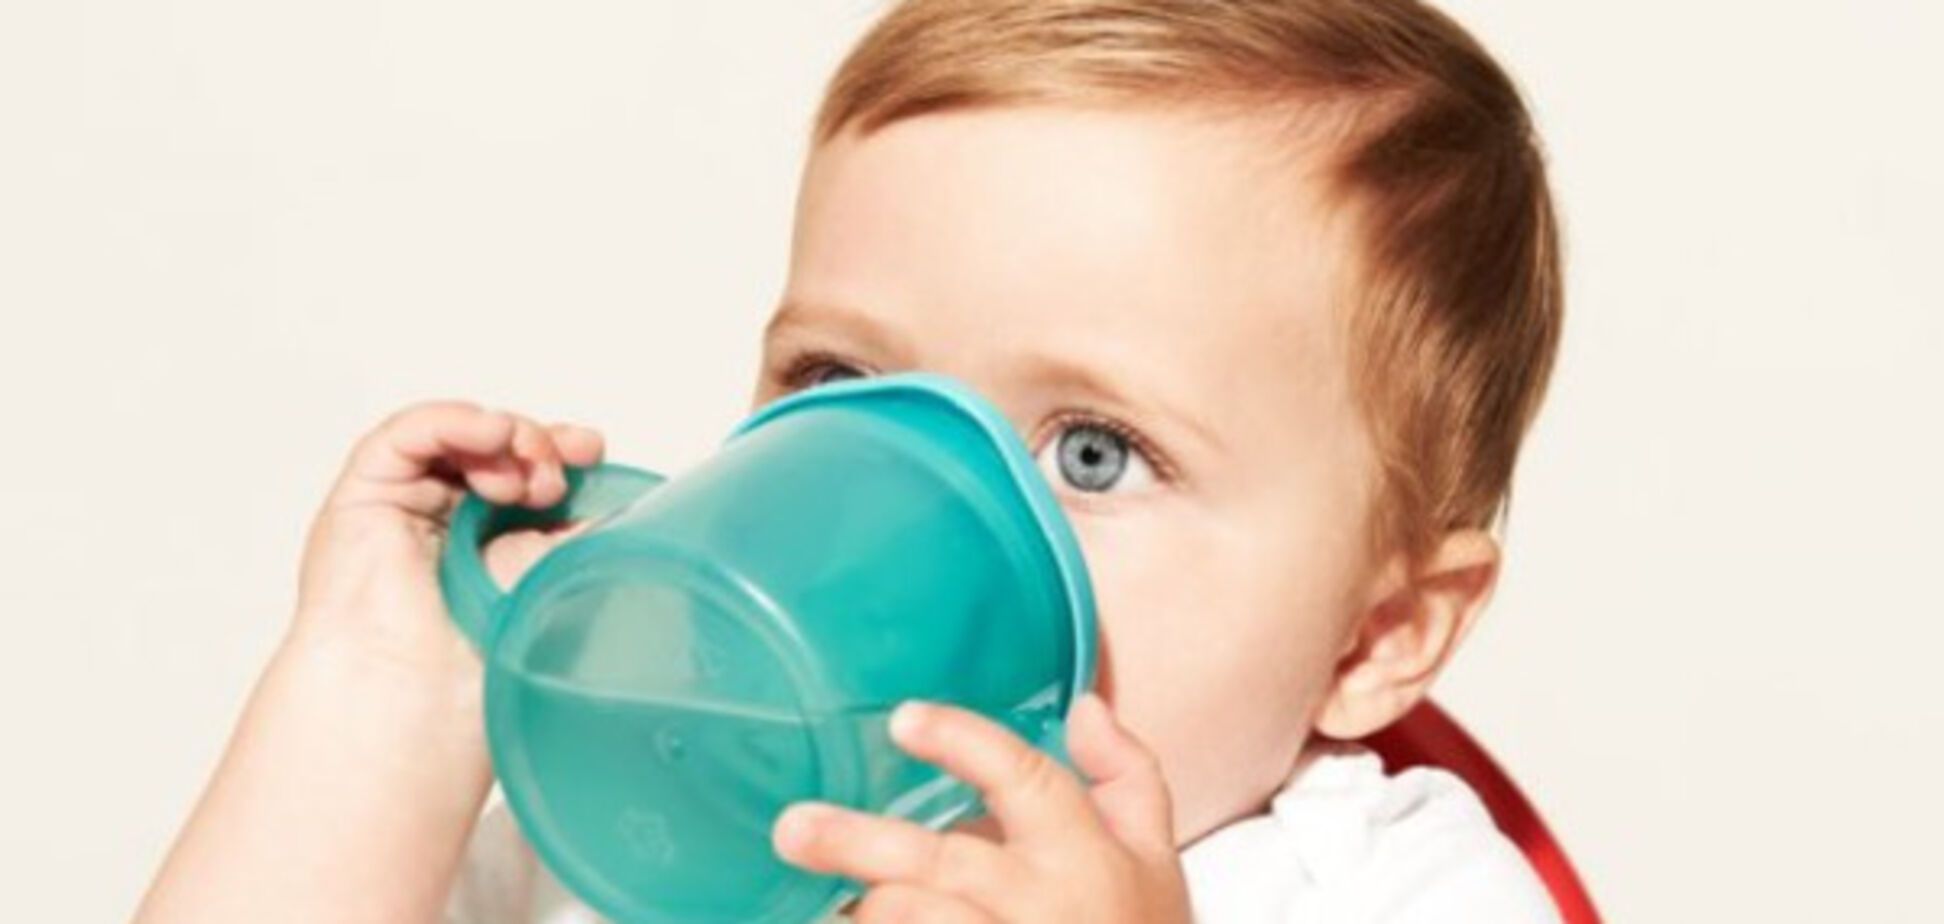 Ребенок пьет воду